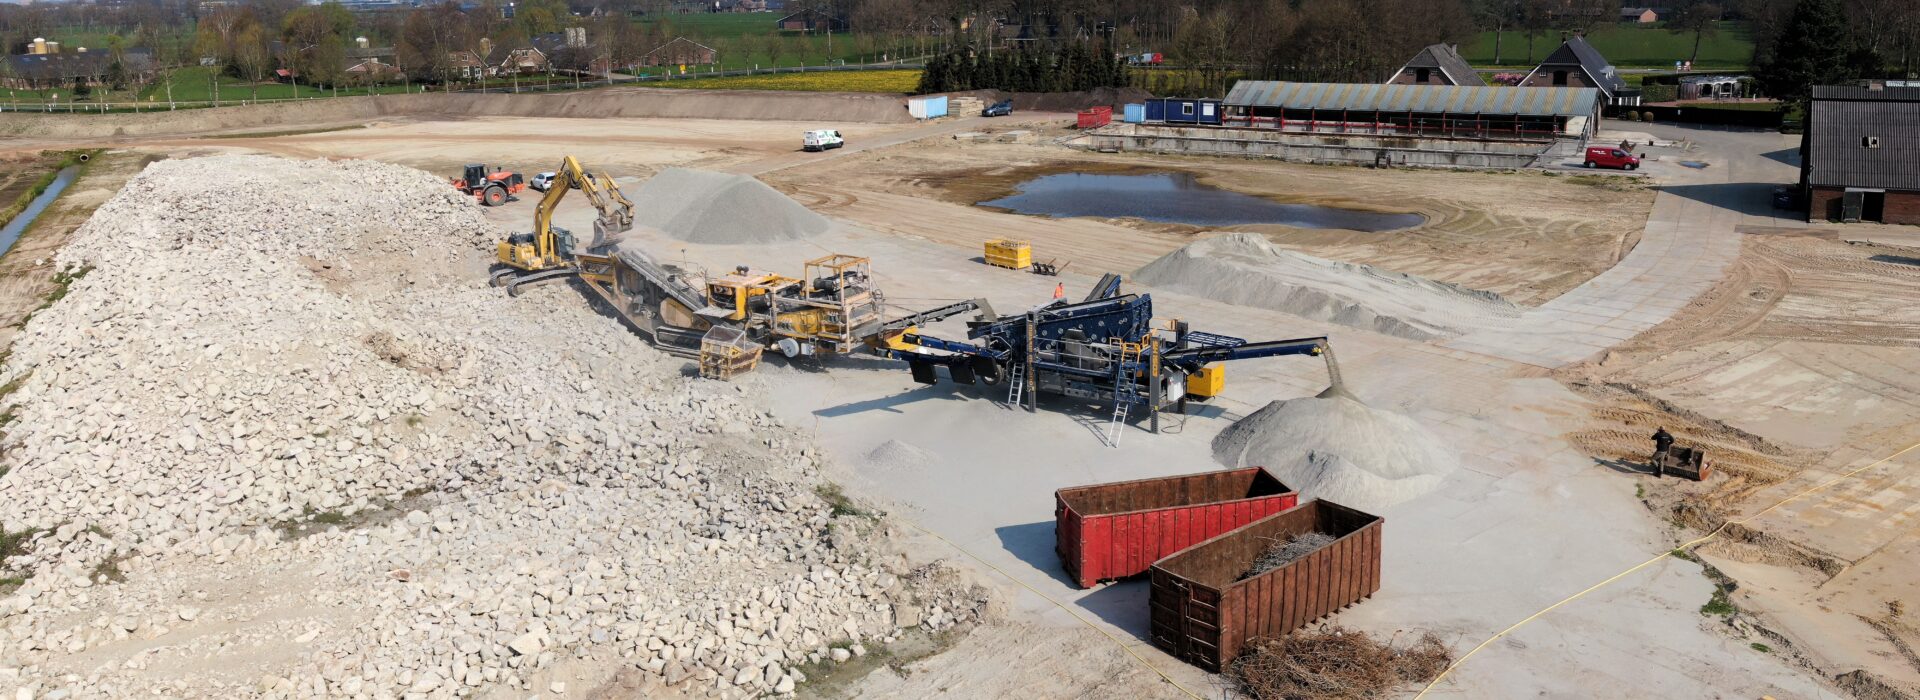 Machines verwerken fundamenten oude fabriek Bosch Beton in Kootwijkerbroek tot granulaat